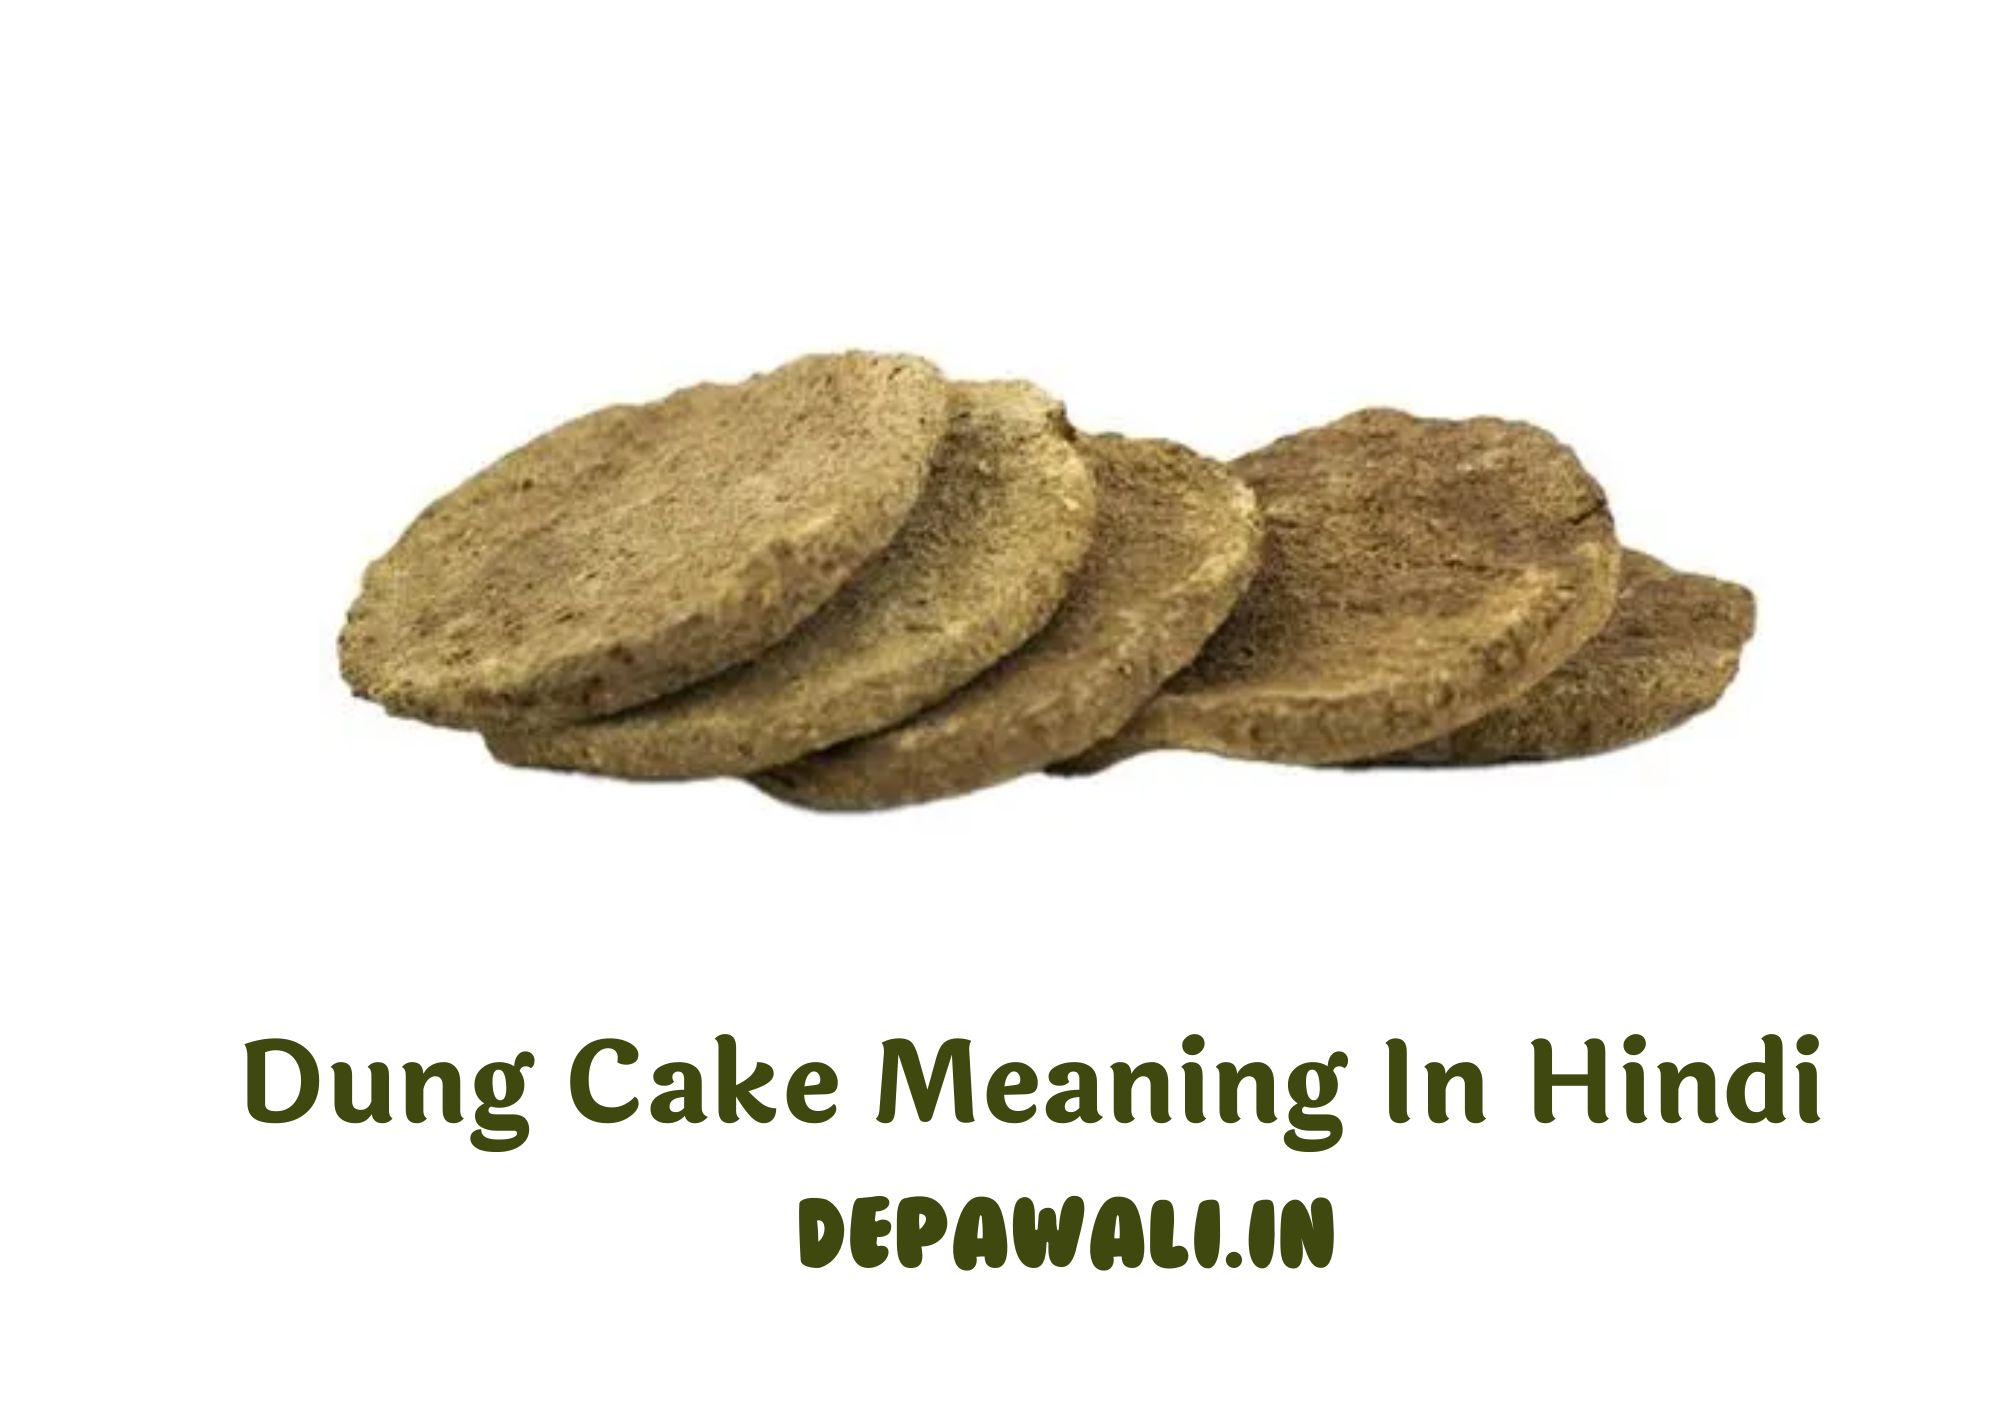 डंग केक का मतलब क्या होता है (Dung Cake Meaning In Hindi)